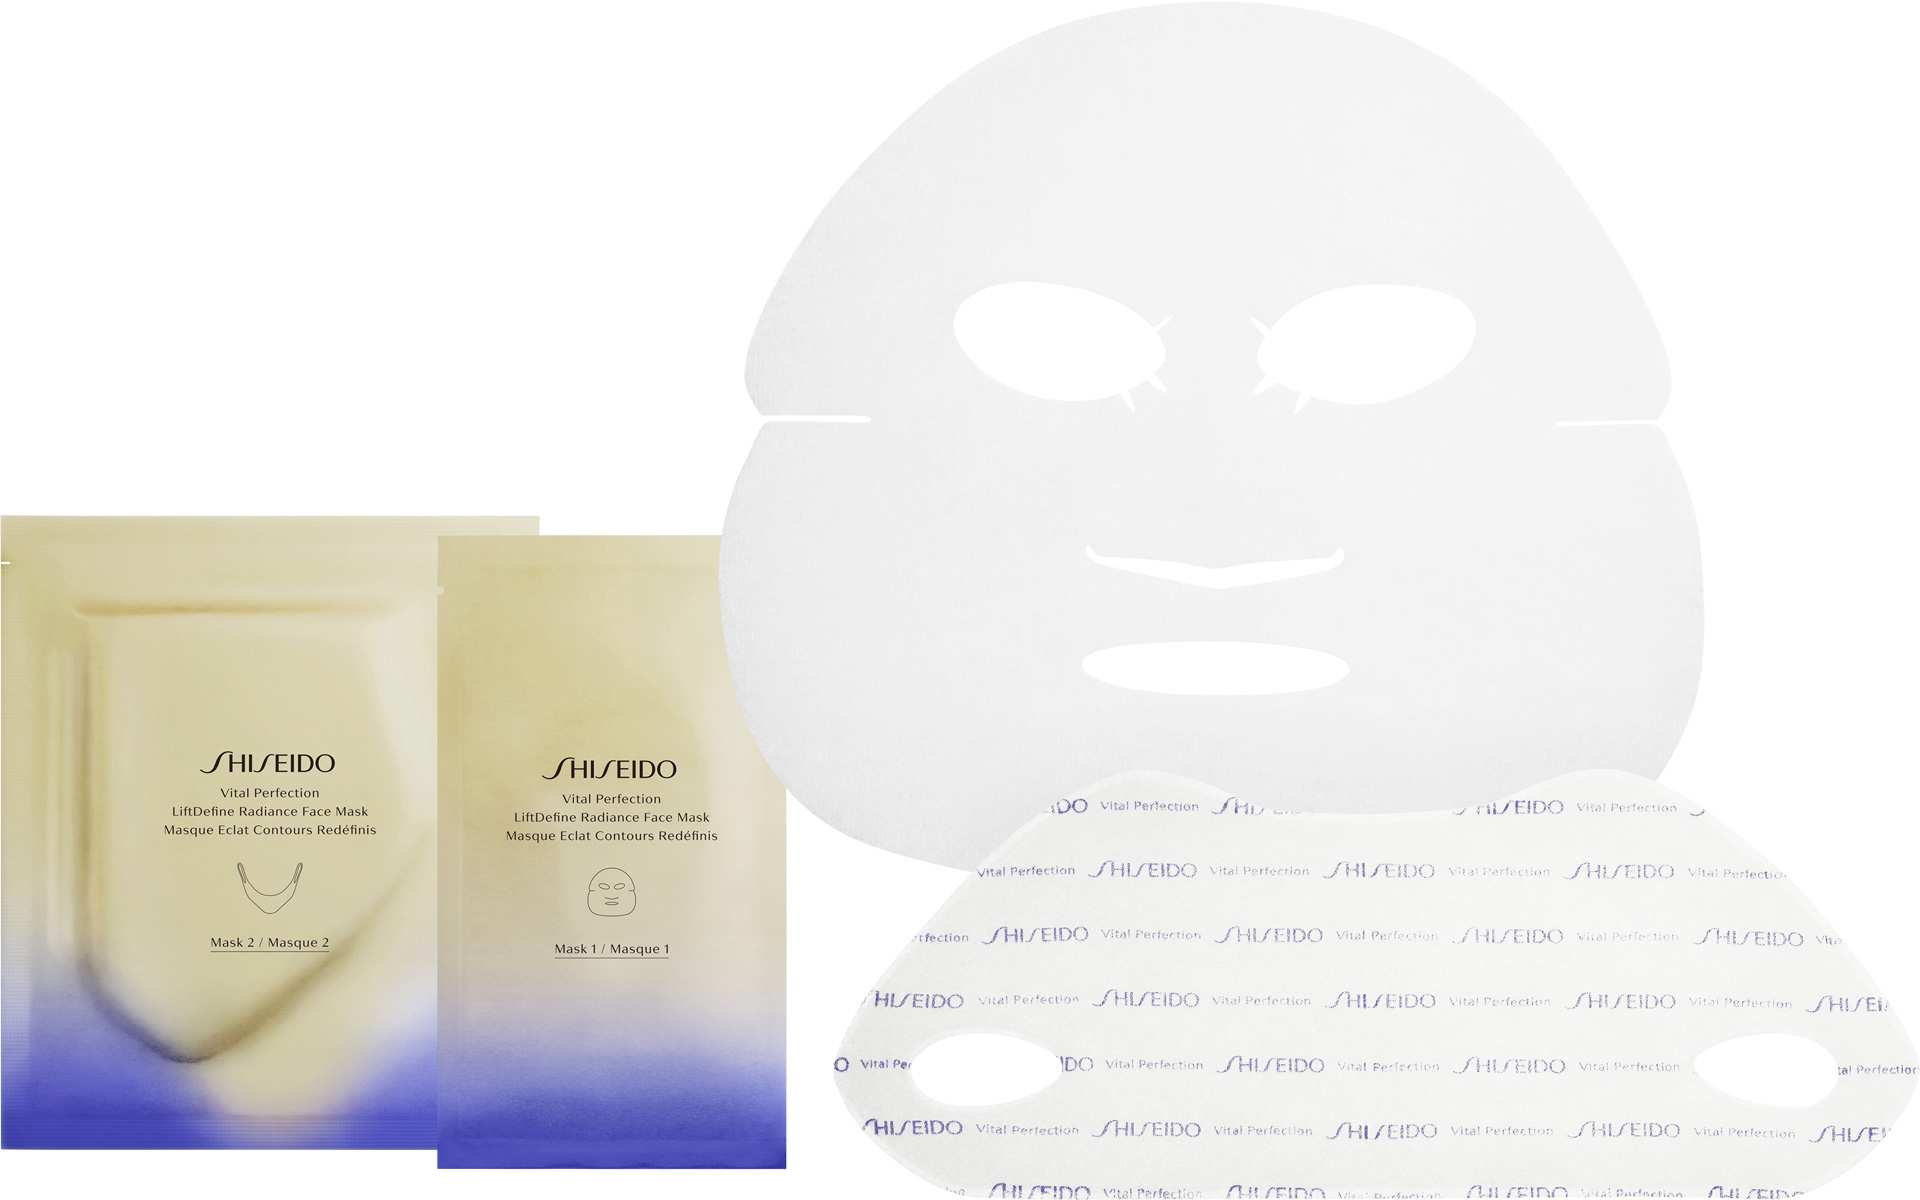 Shiseido Vital Perfection  G - Krem DO Liftdefine radiance face mask 10 G - Maseczka do twarzy w płachcie